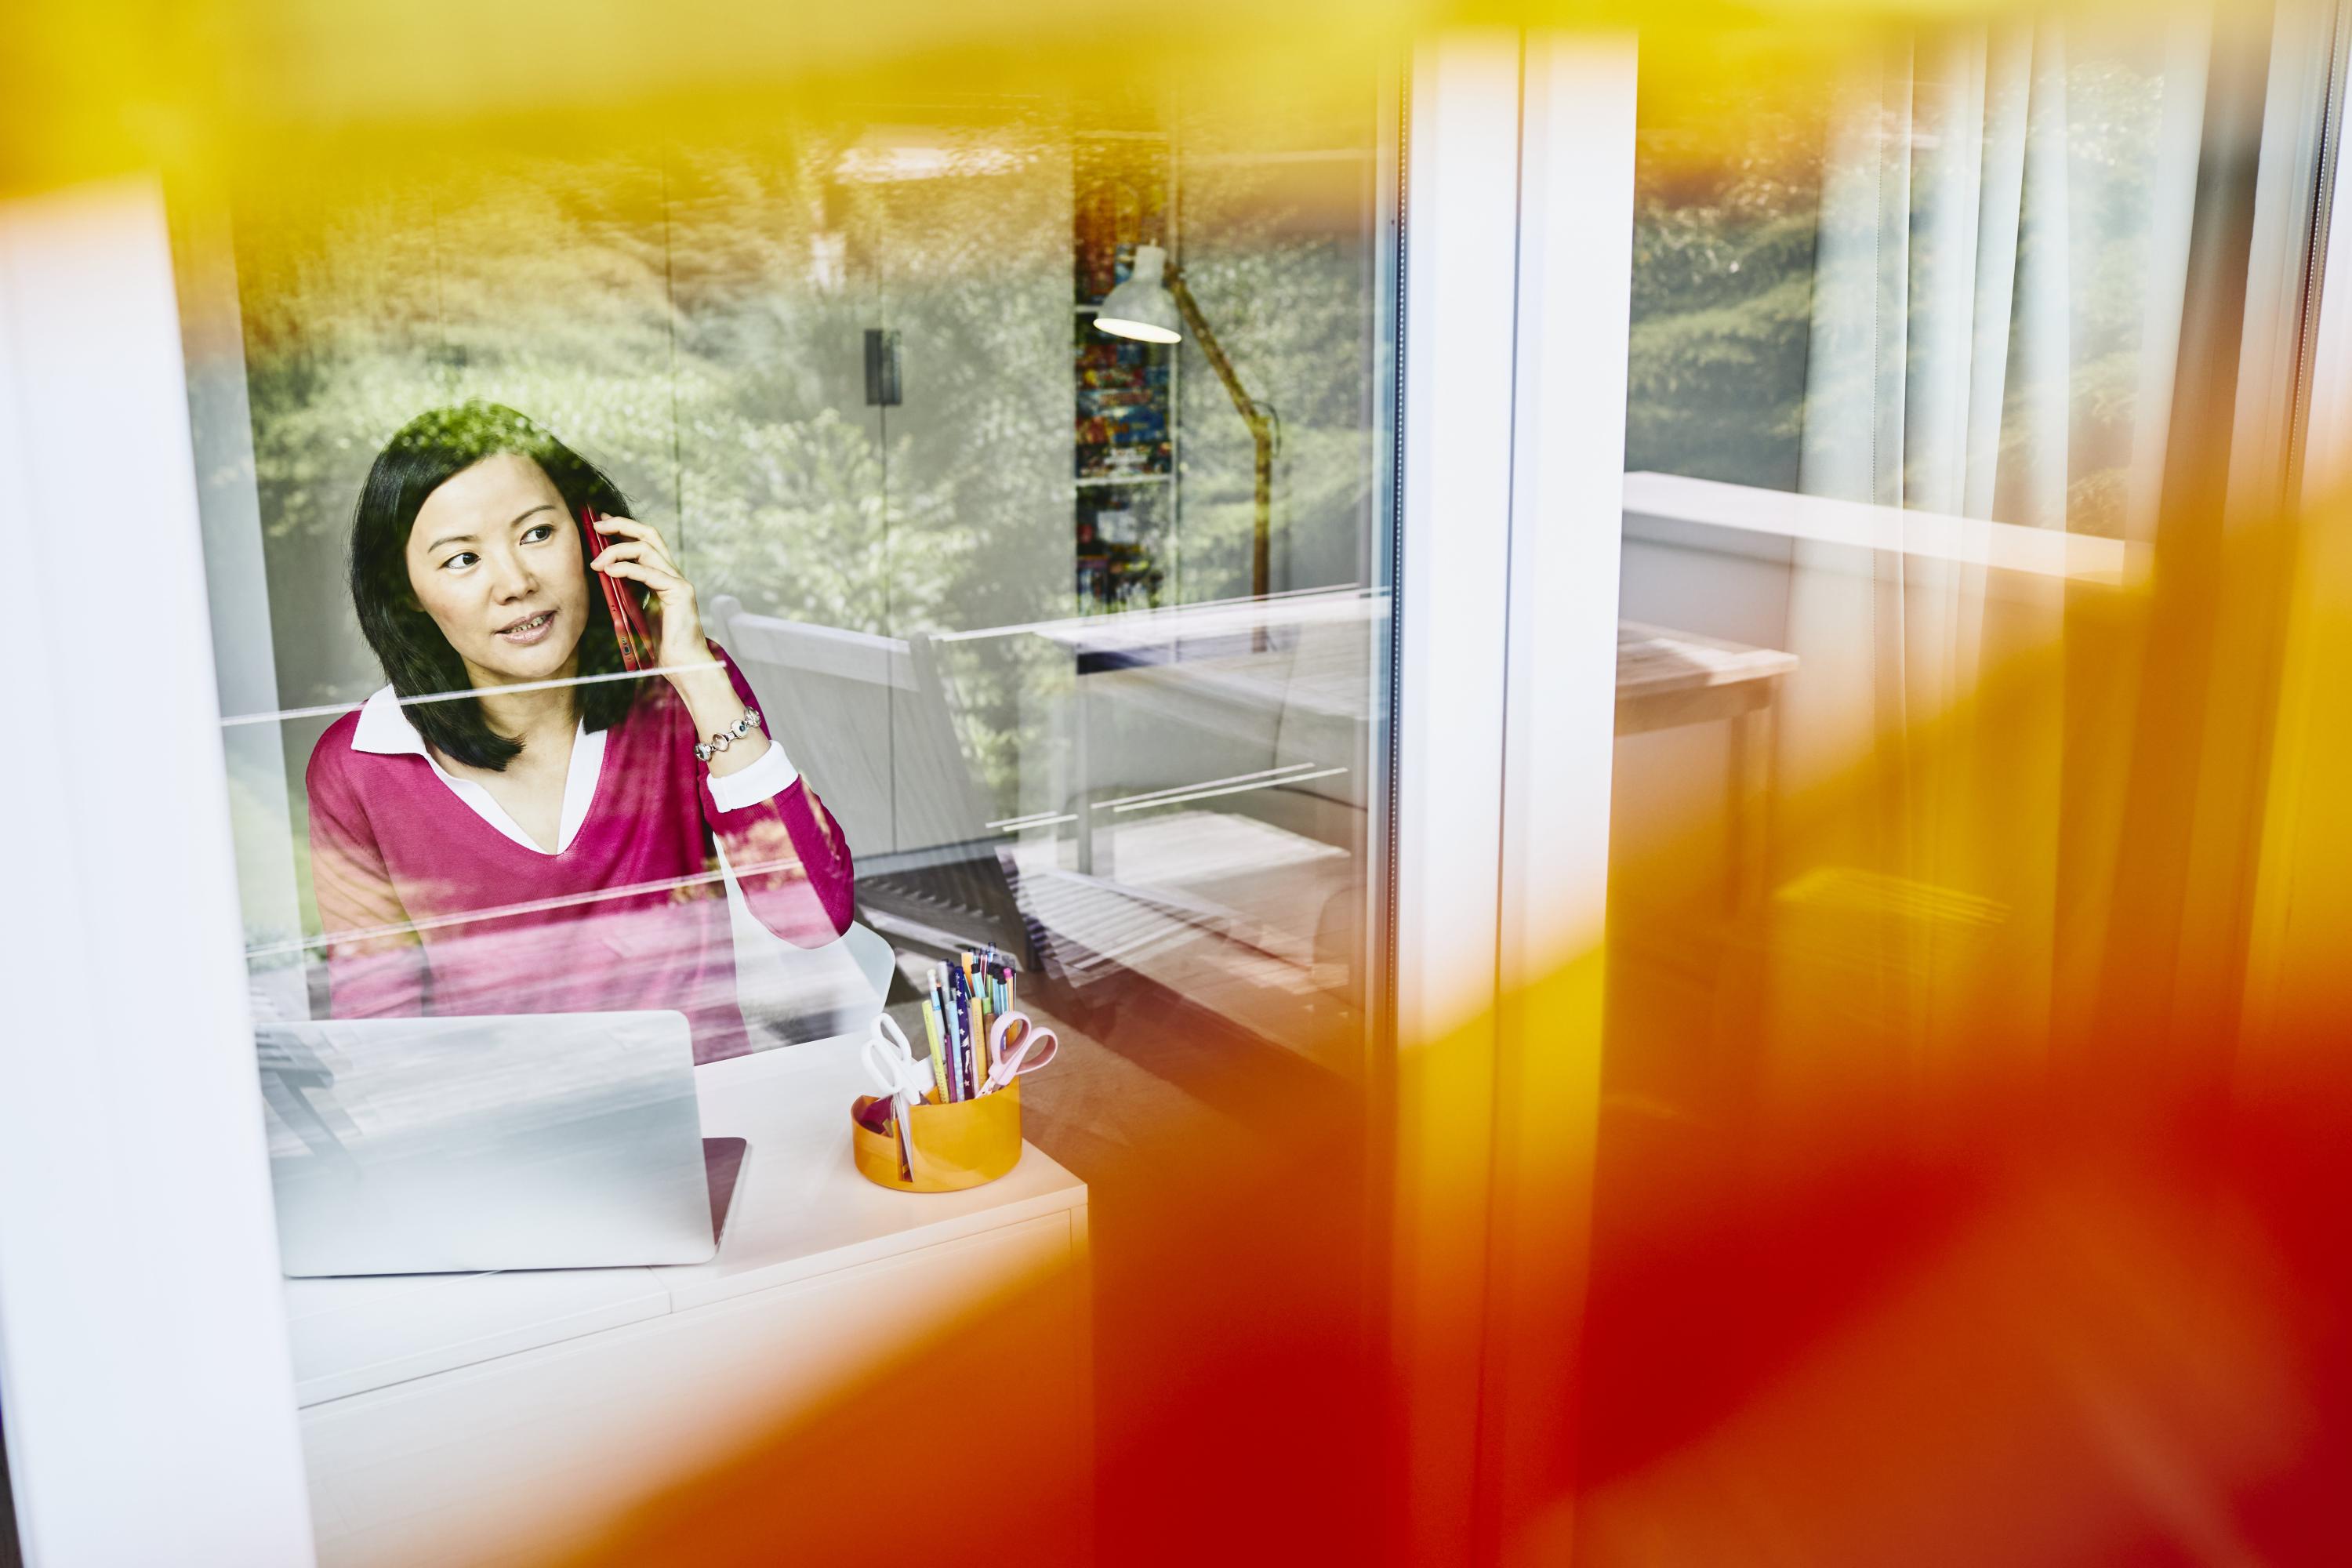 en kvinna syns innanför en glasruta, pratar i telefon och tittar samtidigt ut genom fönstret